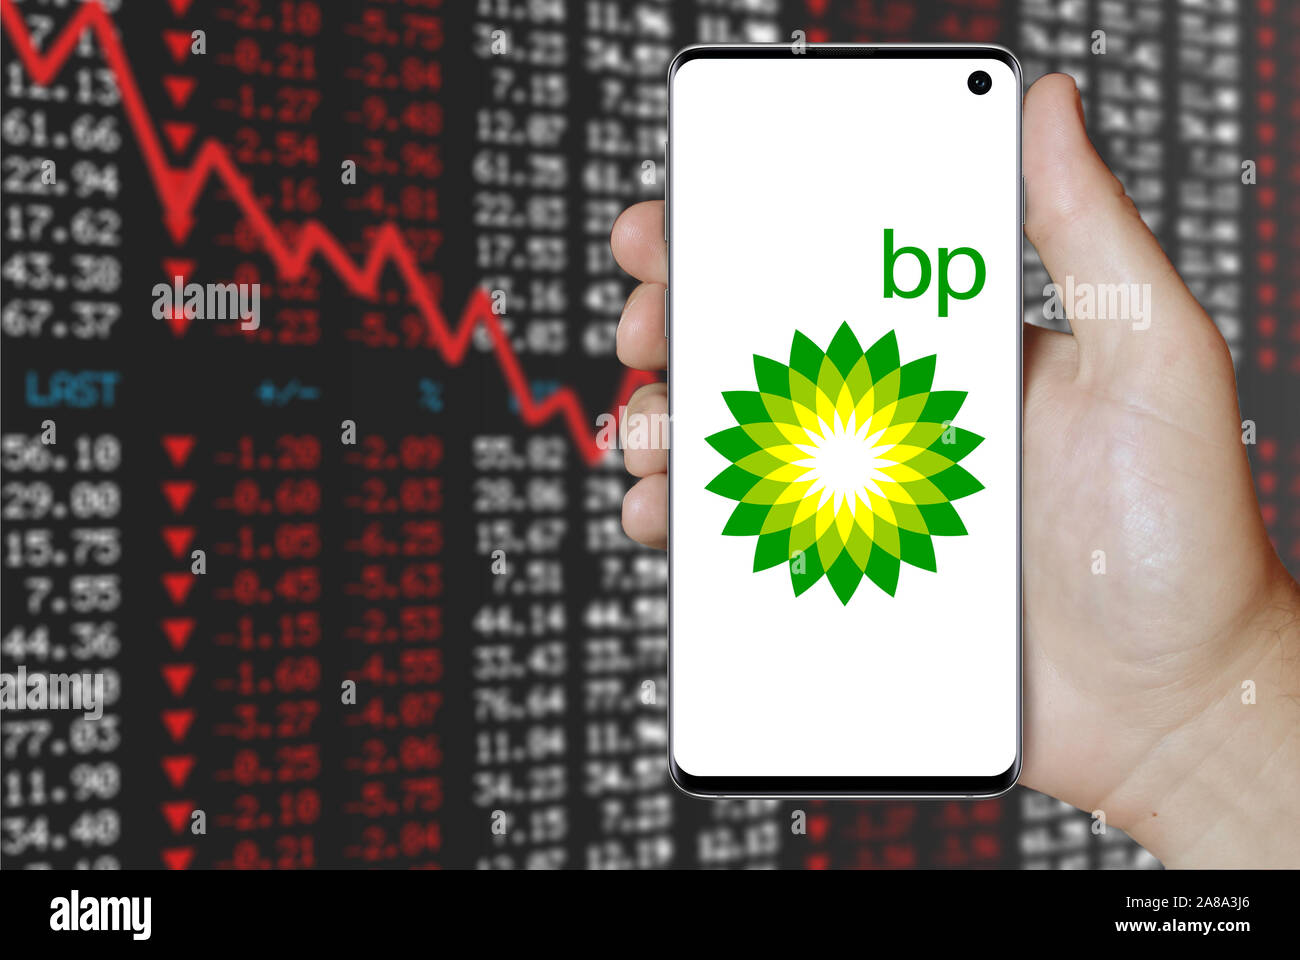 Logo de compagnie publique BP affiche sur un smartphone. Contexte du marché boursier négatif. Credit : PIXDUCE Banque D'Images